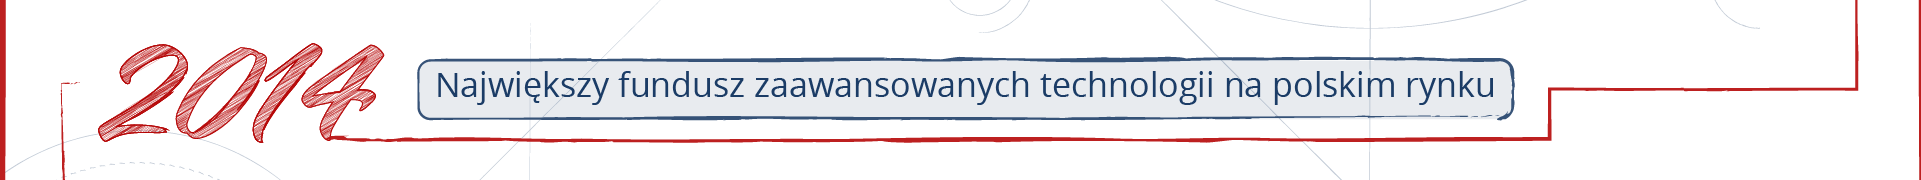 Fragment osi czasu. Ozdobny napis 2014, obok ramka z napisem „Największy fundusz zaawansowanych technologii na polskim rynku”.